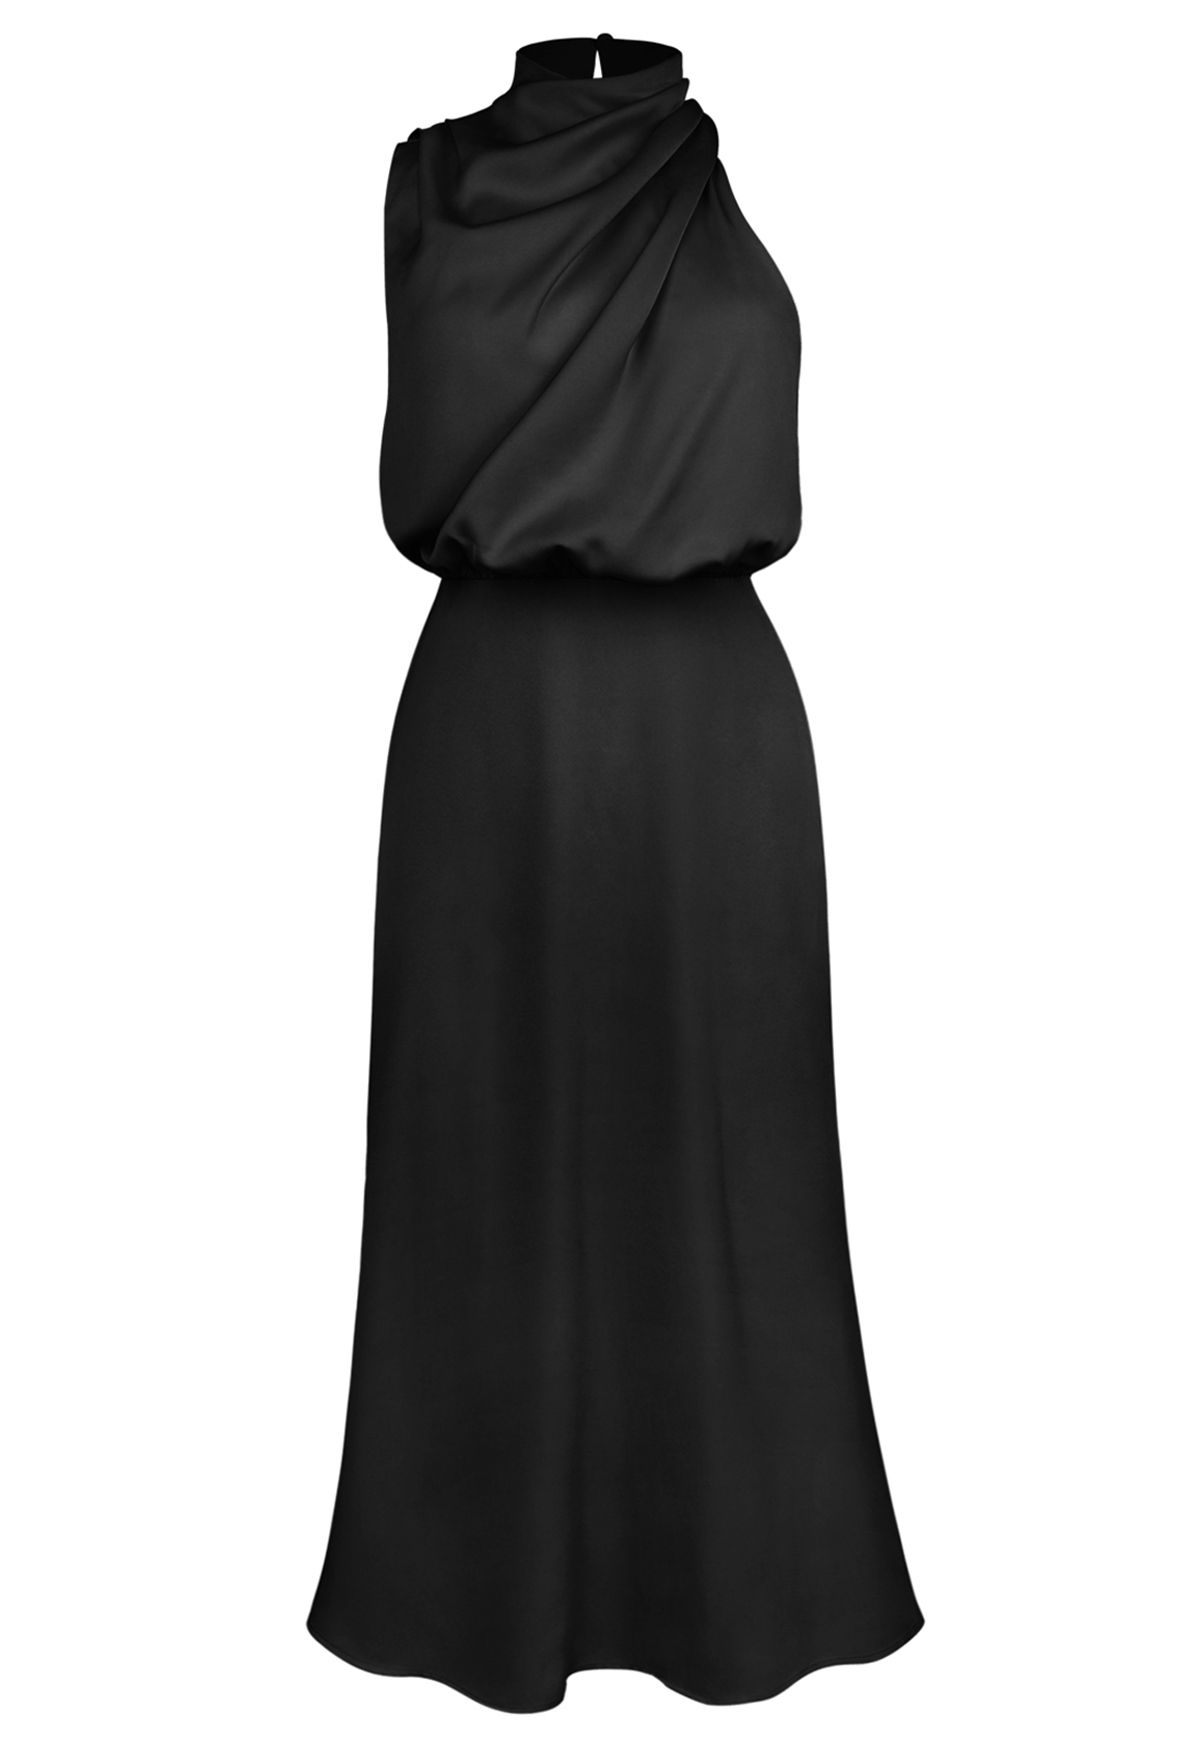 Ärmelloses Kleid mit asymmetrischem Rüschenausschnitt in Schwarz